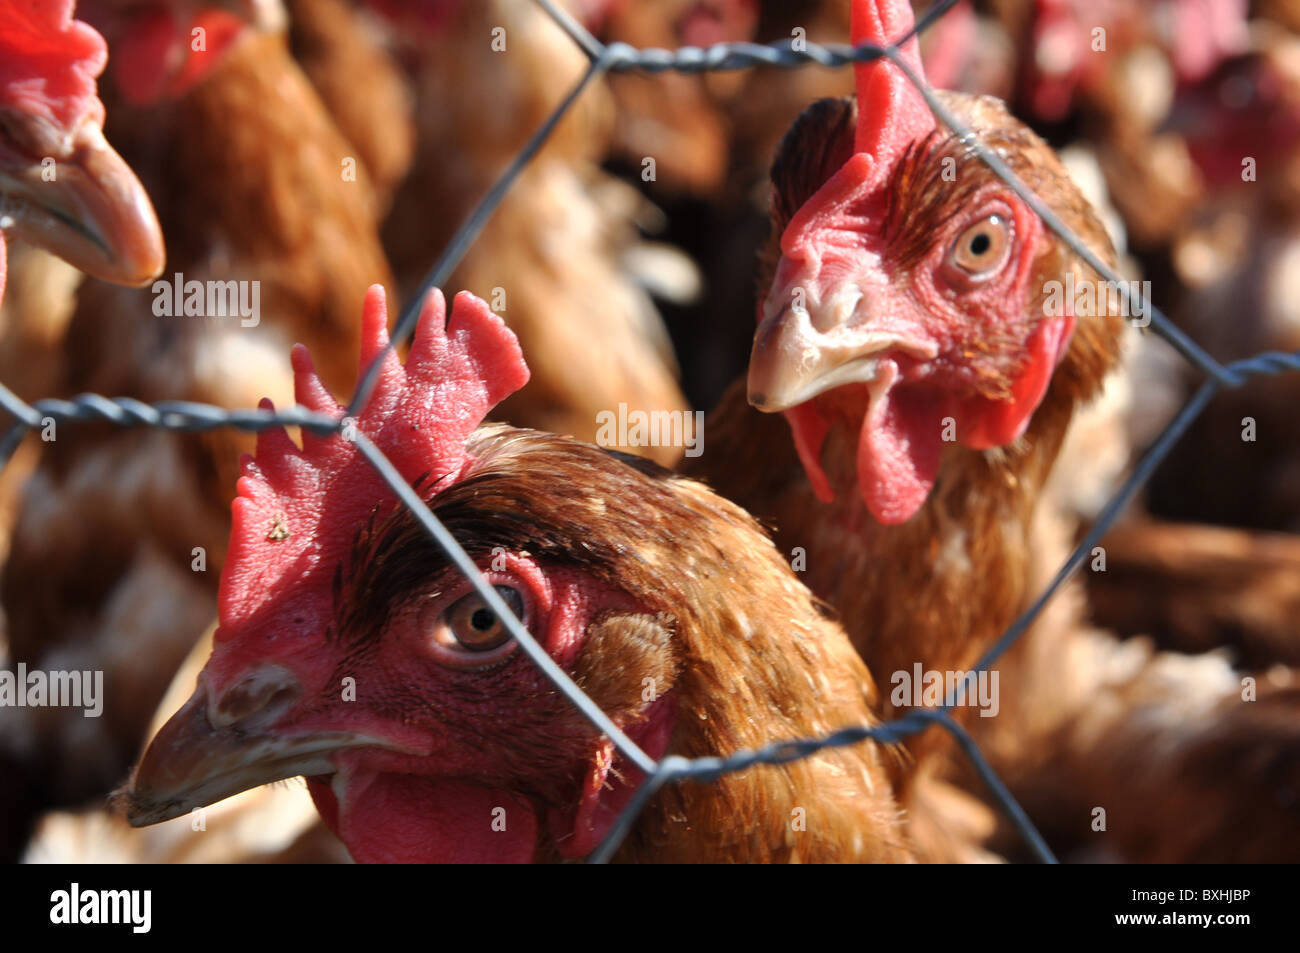 L'élevage du poulet intensif. Gros plan sur la tête des poulets Banque D'Images